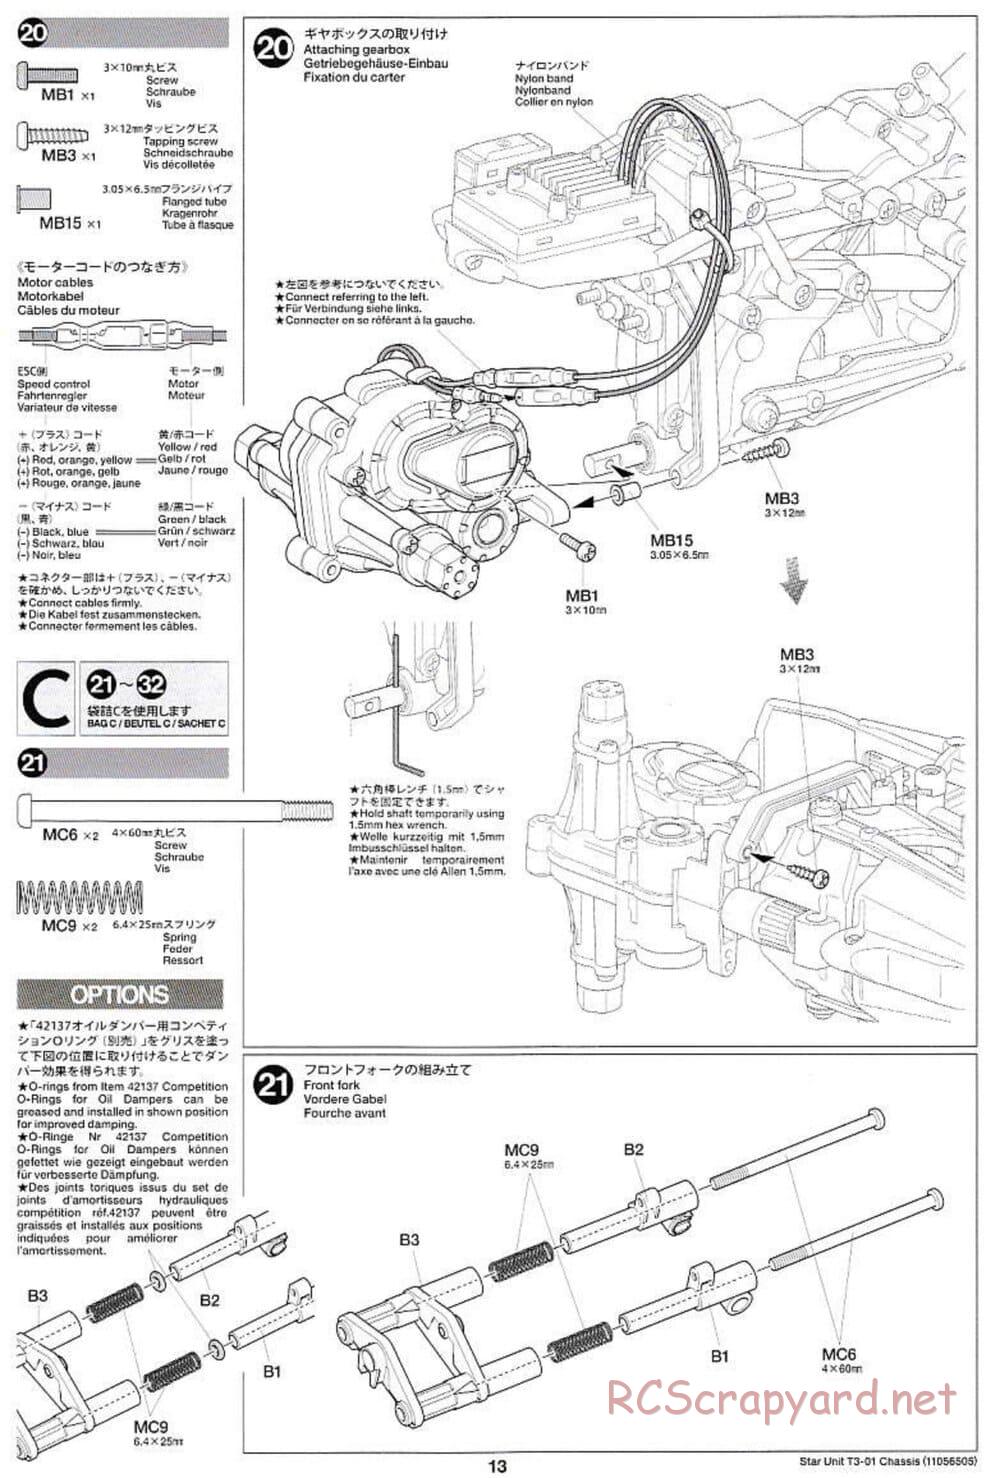 Tamiya - T3-01 Chassis - Manual - Page 13